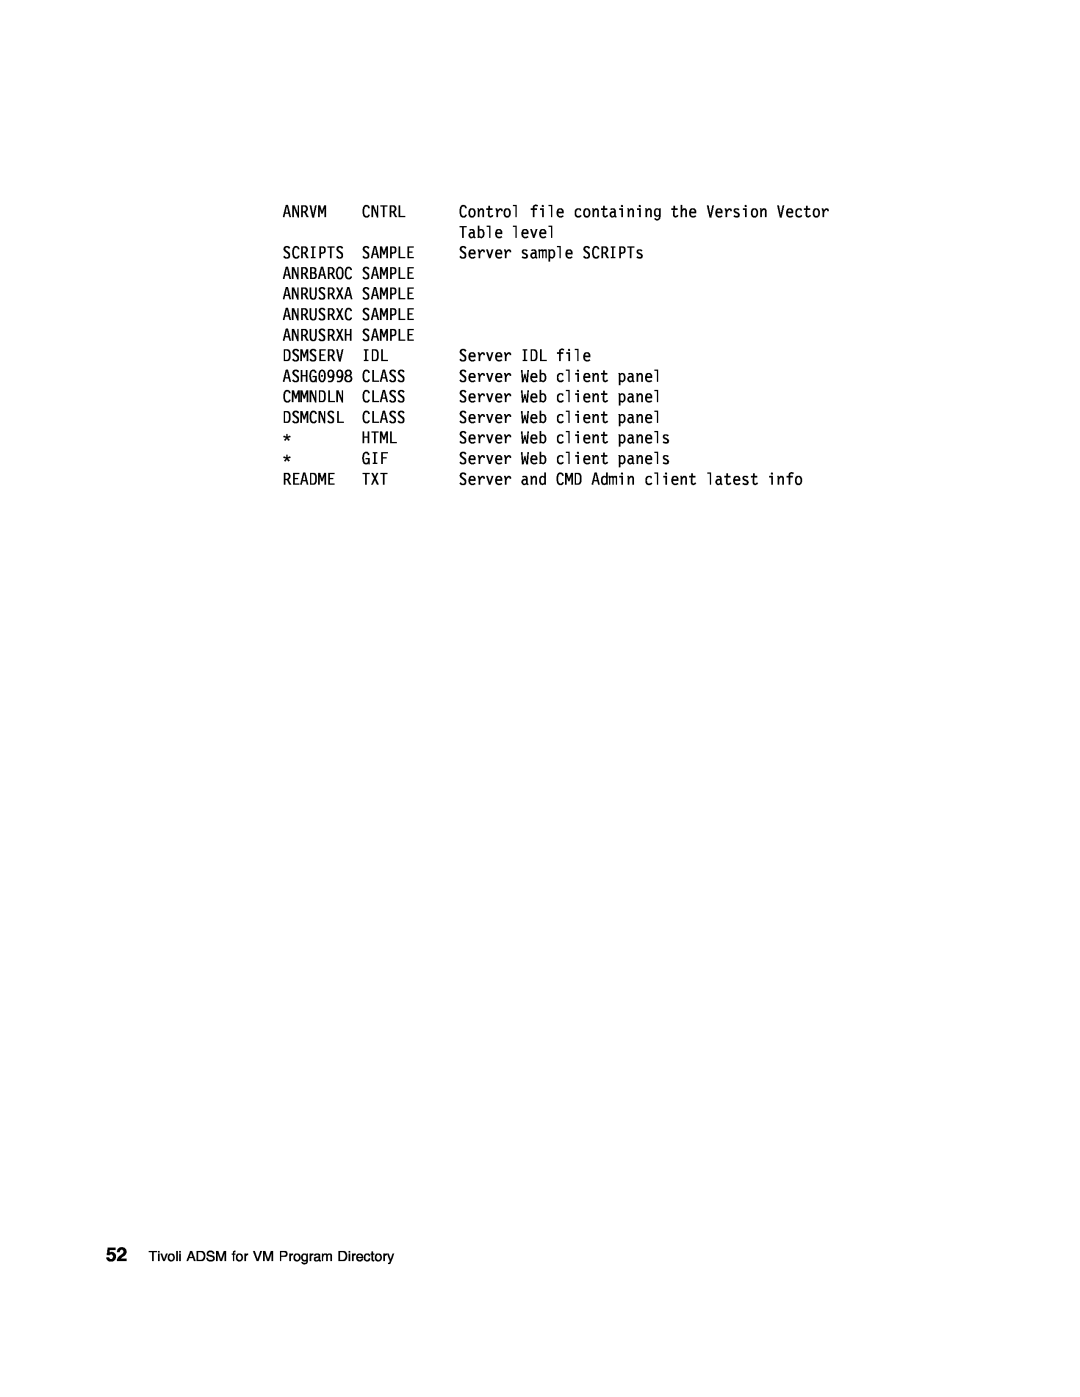 IBM 5697-VM3 manual Tivoli ADSM for VM Program Directory, Cmmndln 